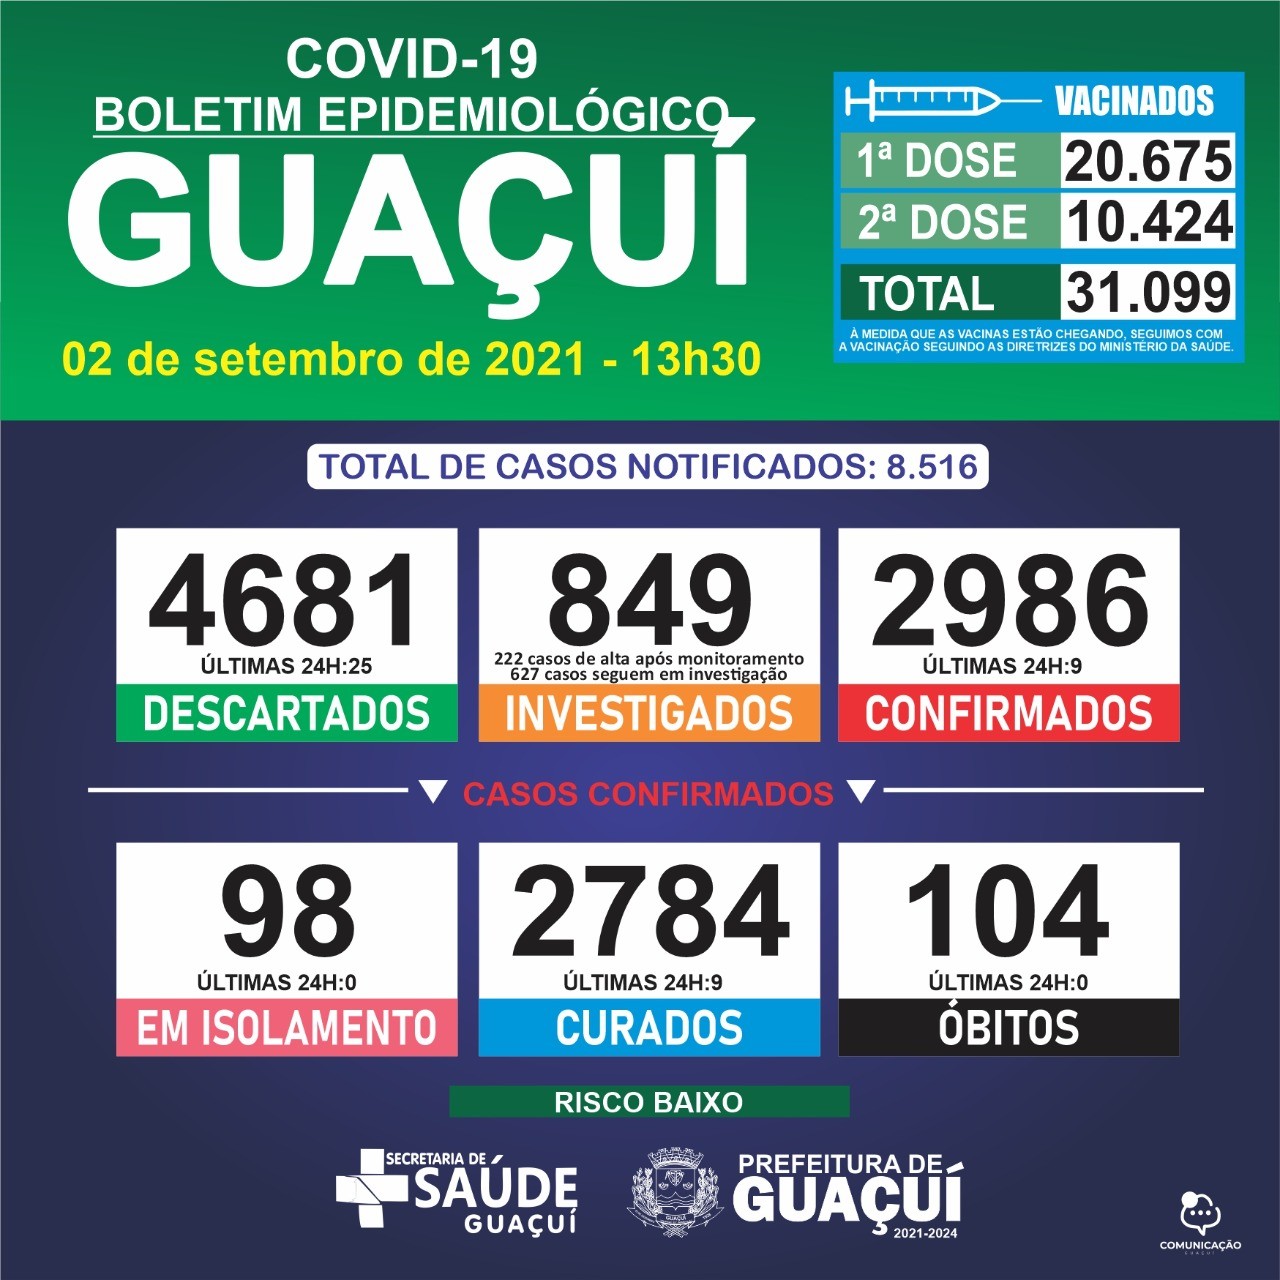 Boletim Epidemiológico 02/09/21: Guaçuí registra 9 casos confirmados e 9 curados nas últimas 24 horas